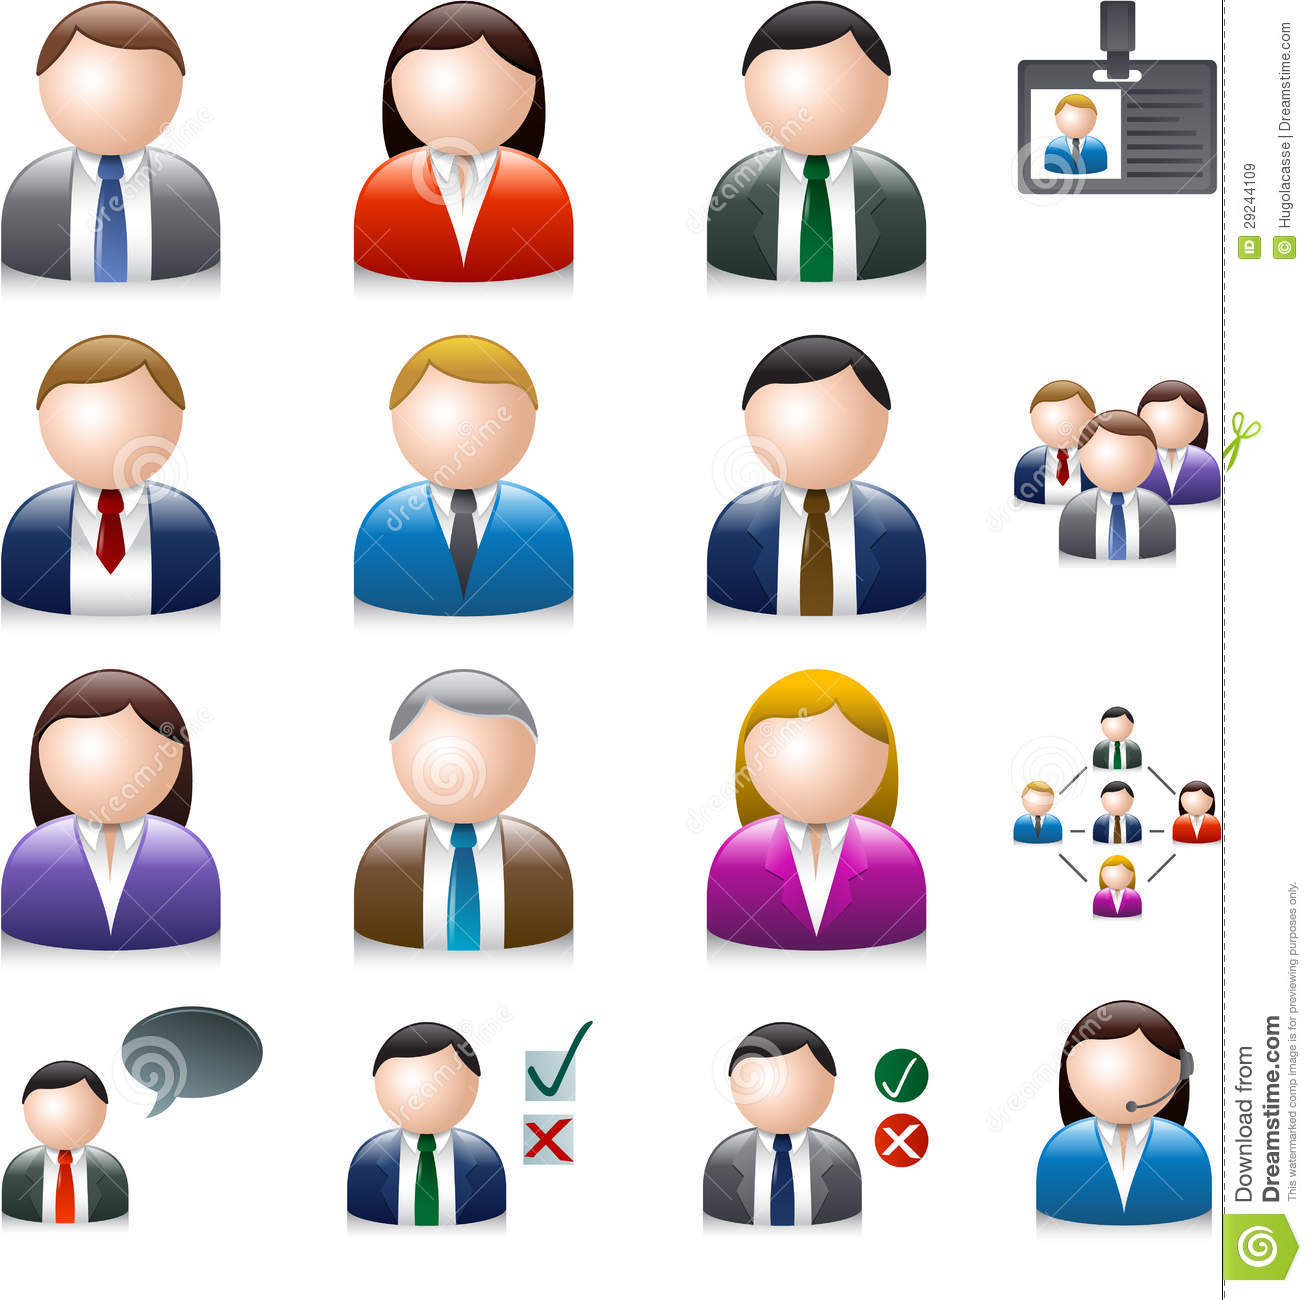 Shiny people. Иконка человечек. Инфографика человечки. Иконки людей для презентации. Человечки для инфографики.